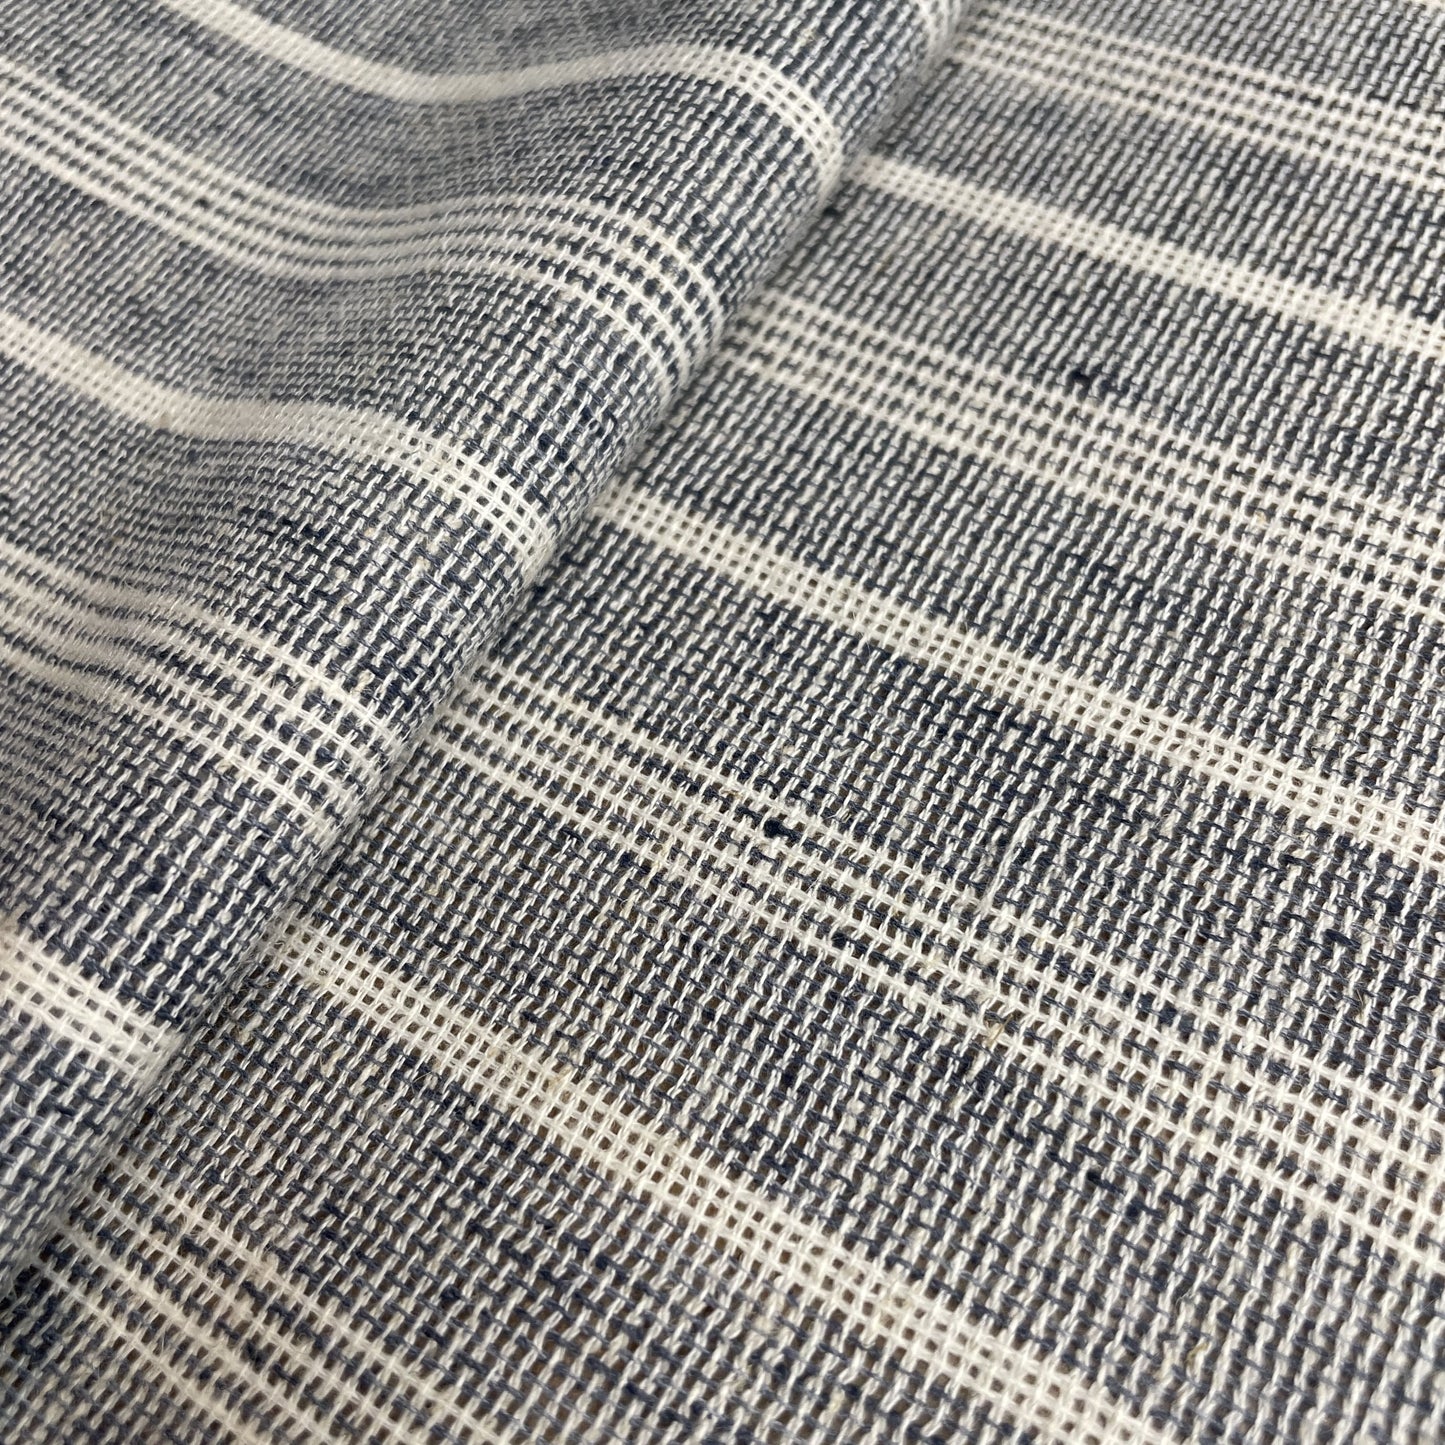 Premium White Stripes Print Linen Denim Fabric